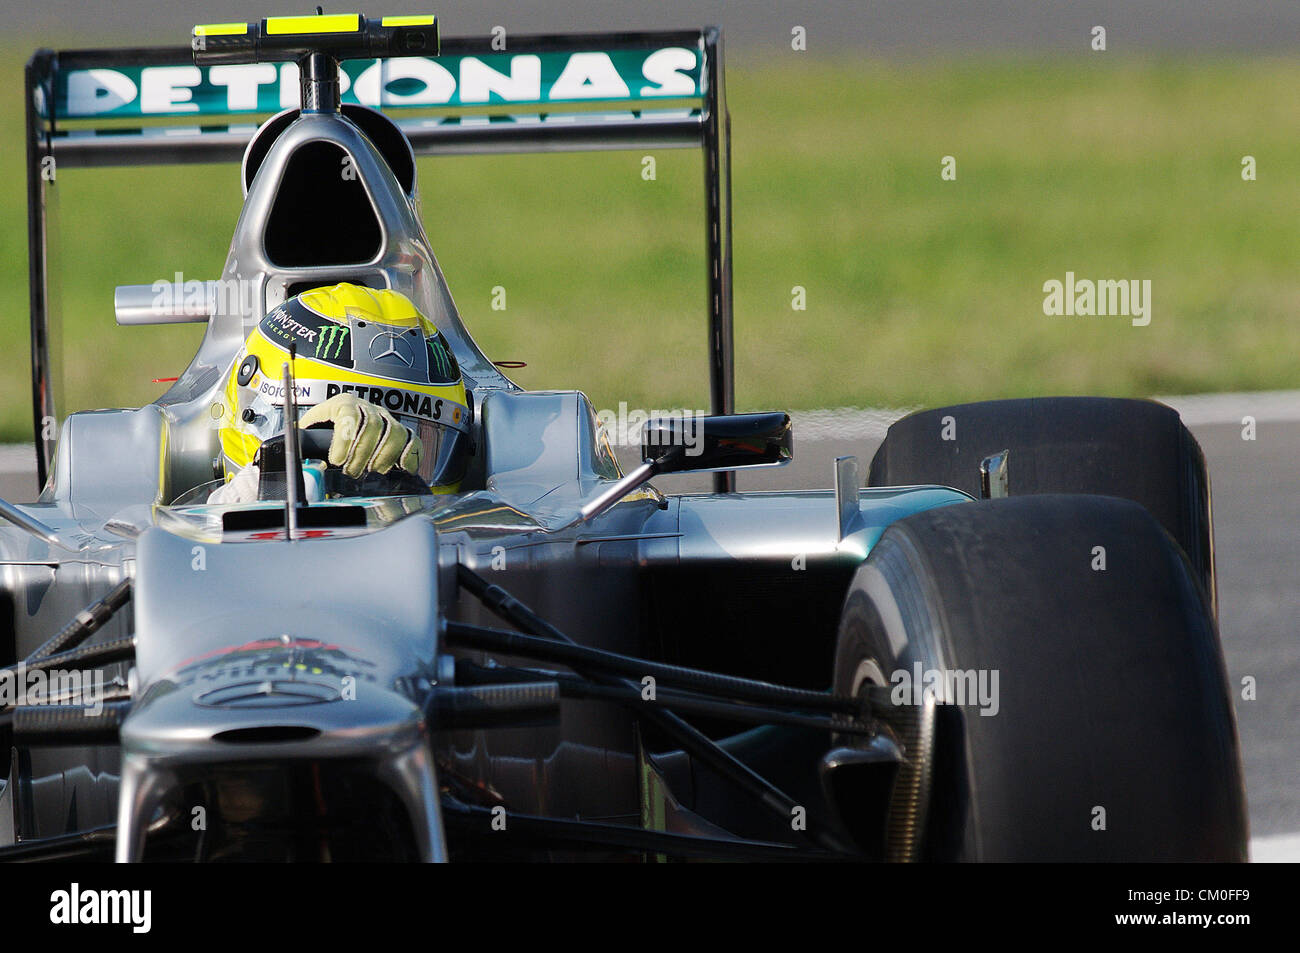 Monza, Italie. 8 septembre 2012. Mercedes de Nico Rosberg en action lors de la journée de qualification GP d'Italie 2012. Banque D'Images